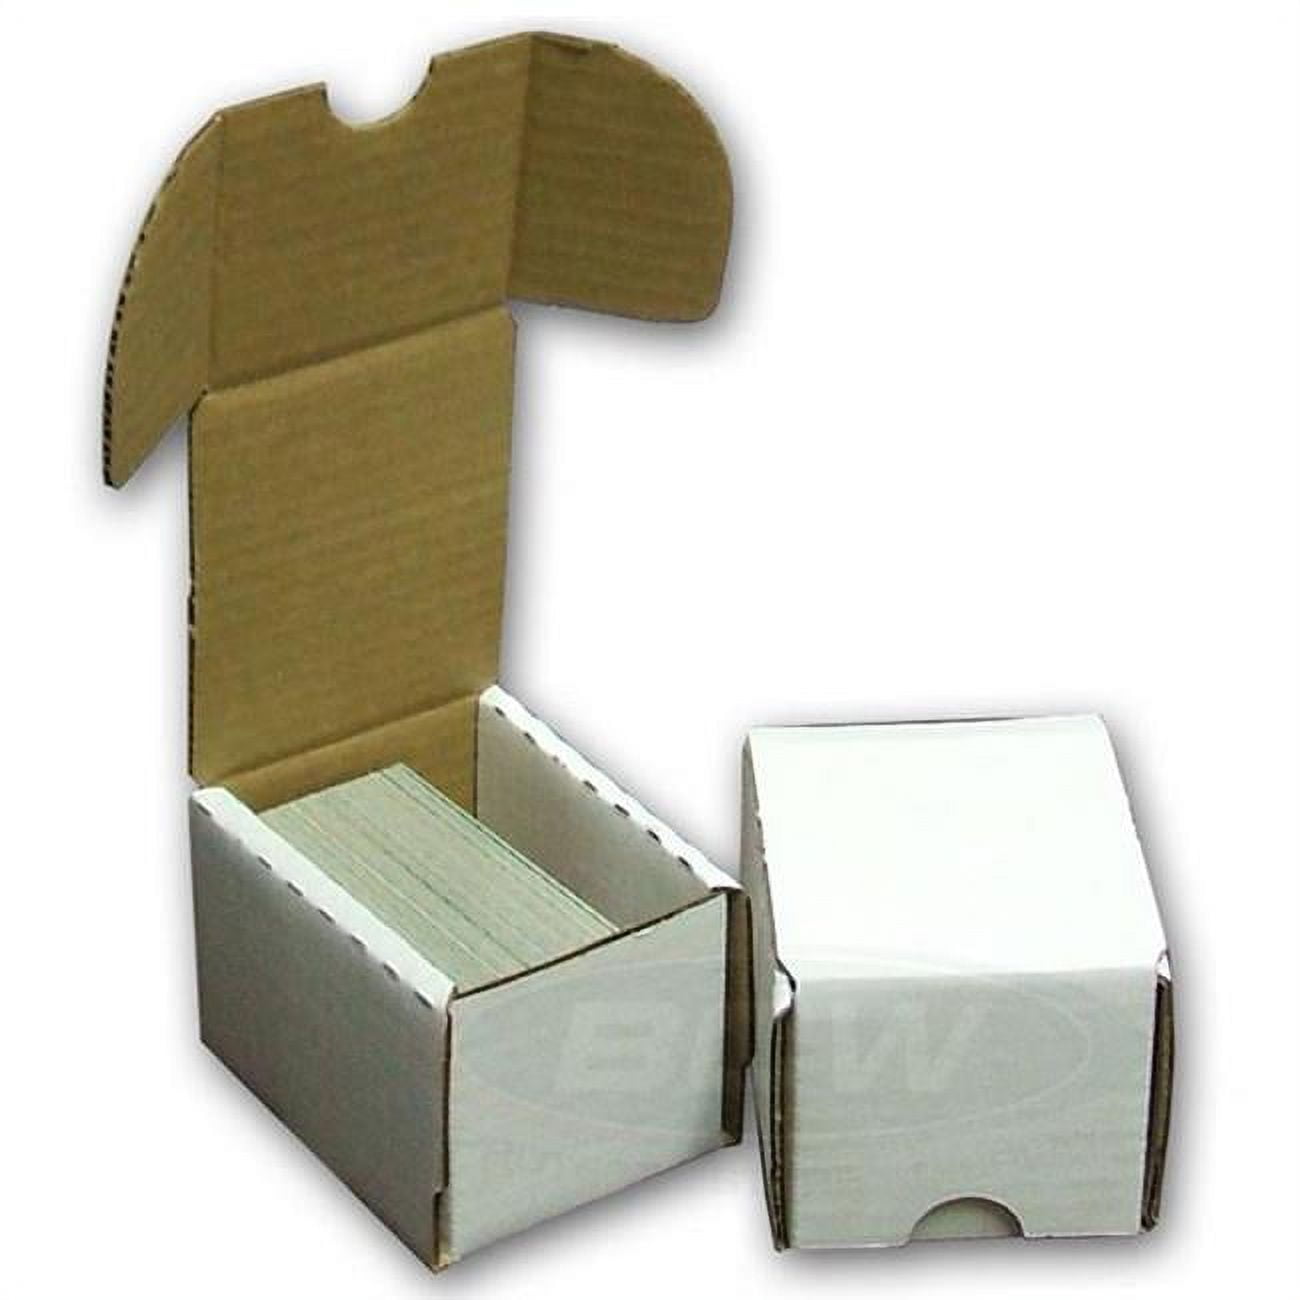 Bundle of 10 BCW DVD / Media / Manga Cardboard Storage Boxes